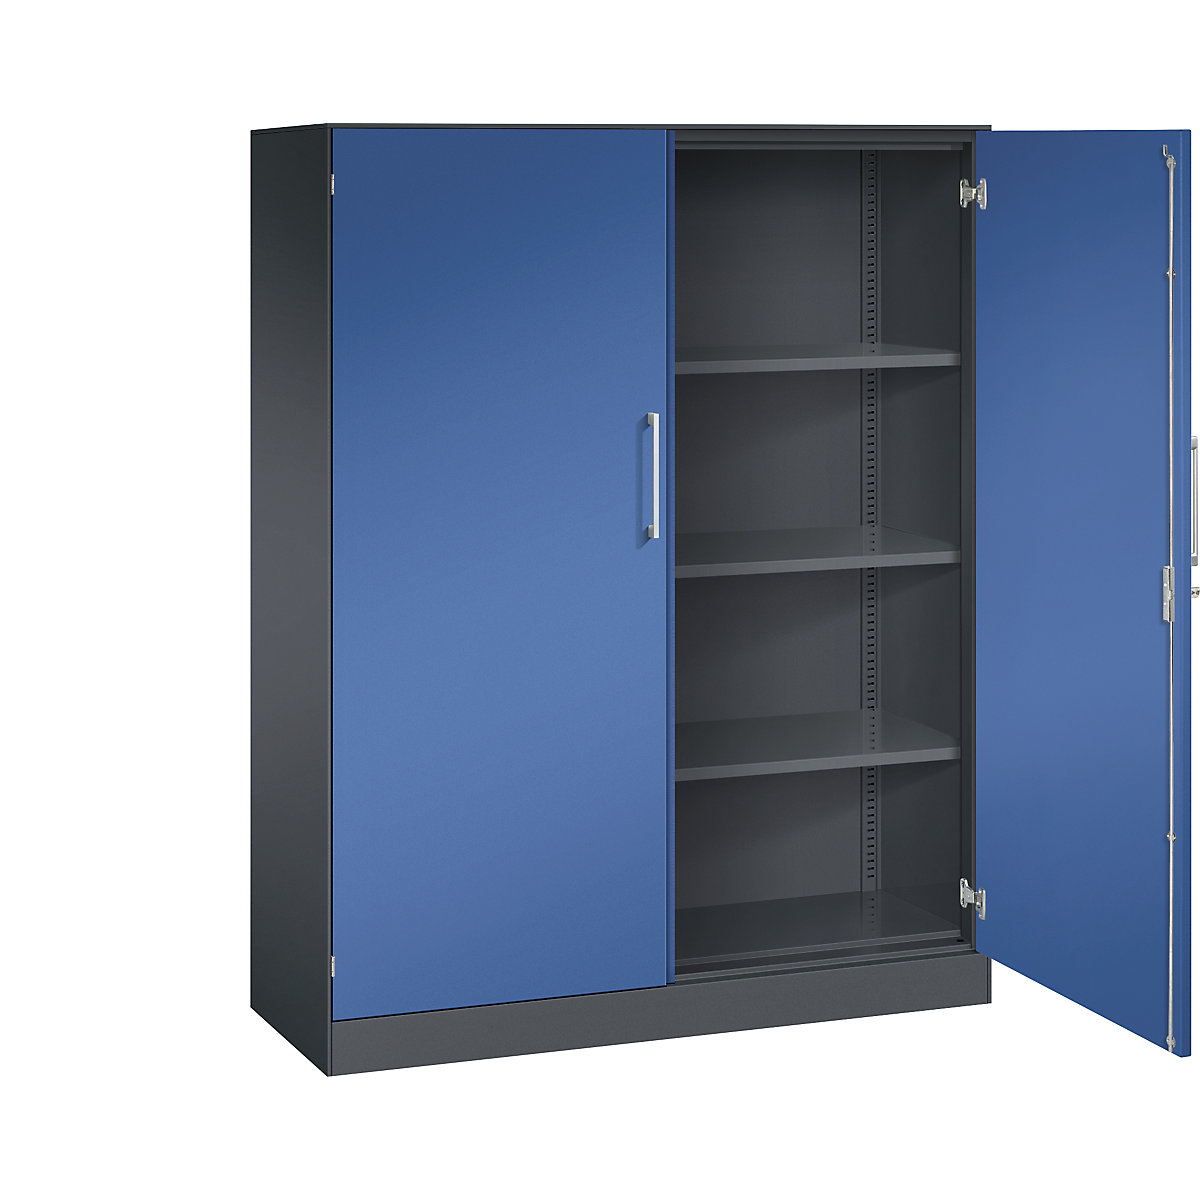 C+P – Skříň s otočnými dveřmi ASISTO, výška 1617 mm, šířka 1200 mm, 3 police, černošedá/enciánová modrá